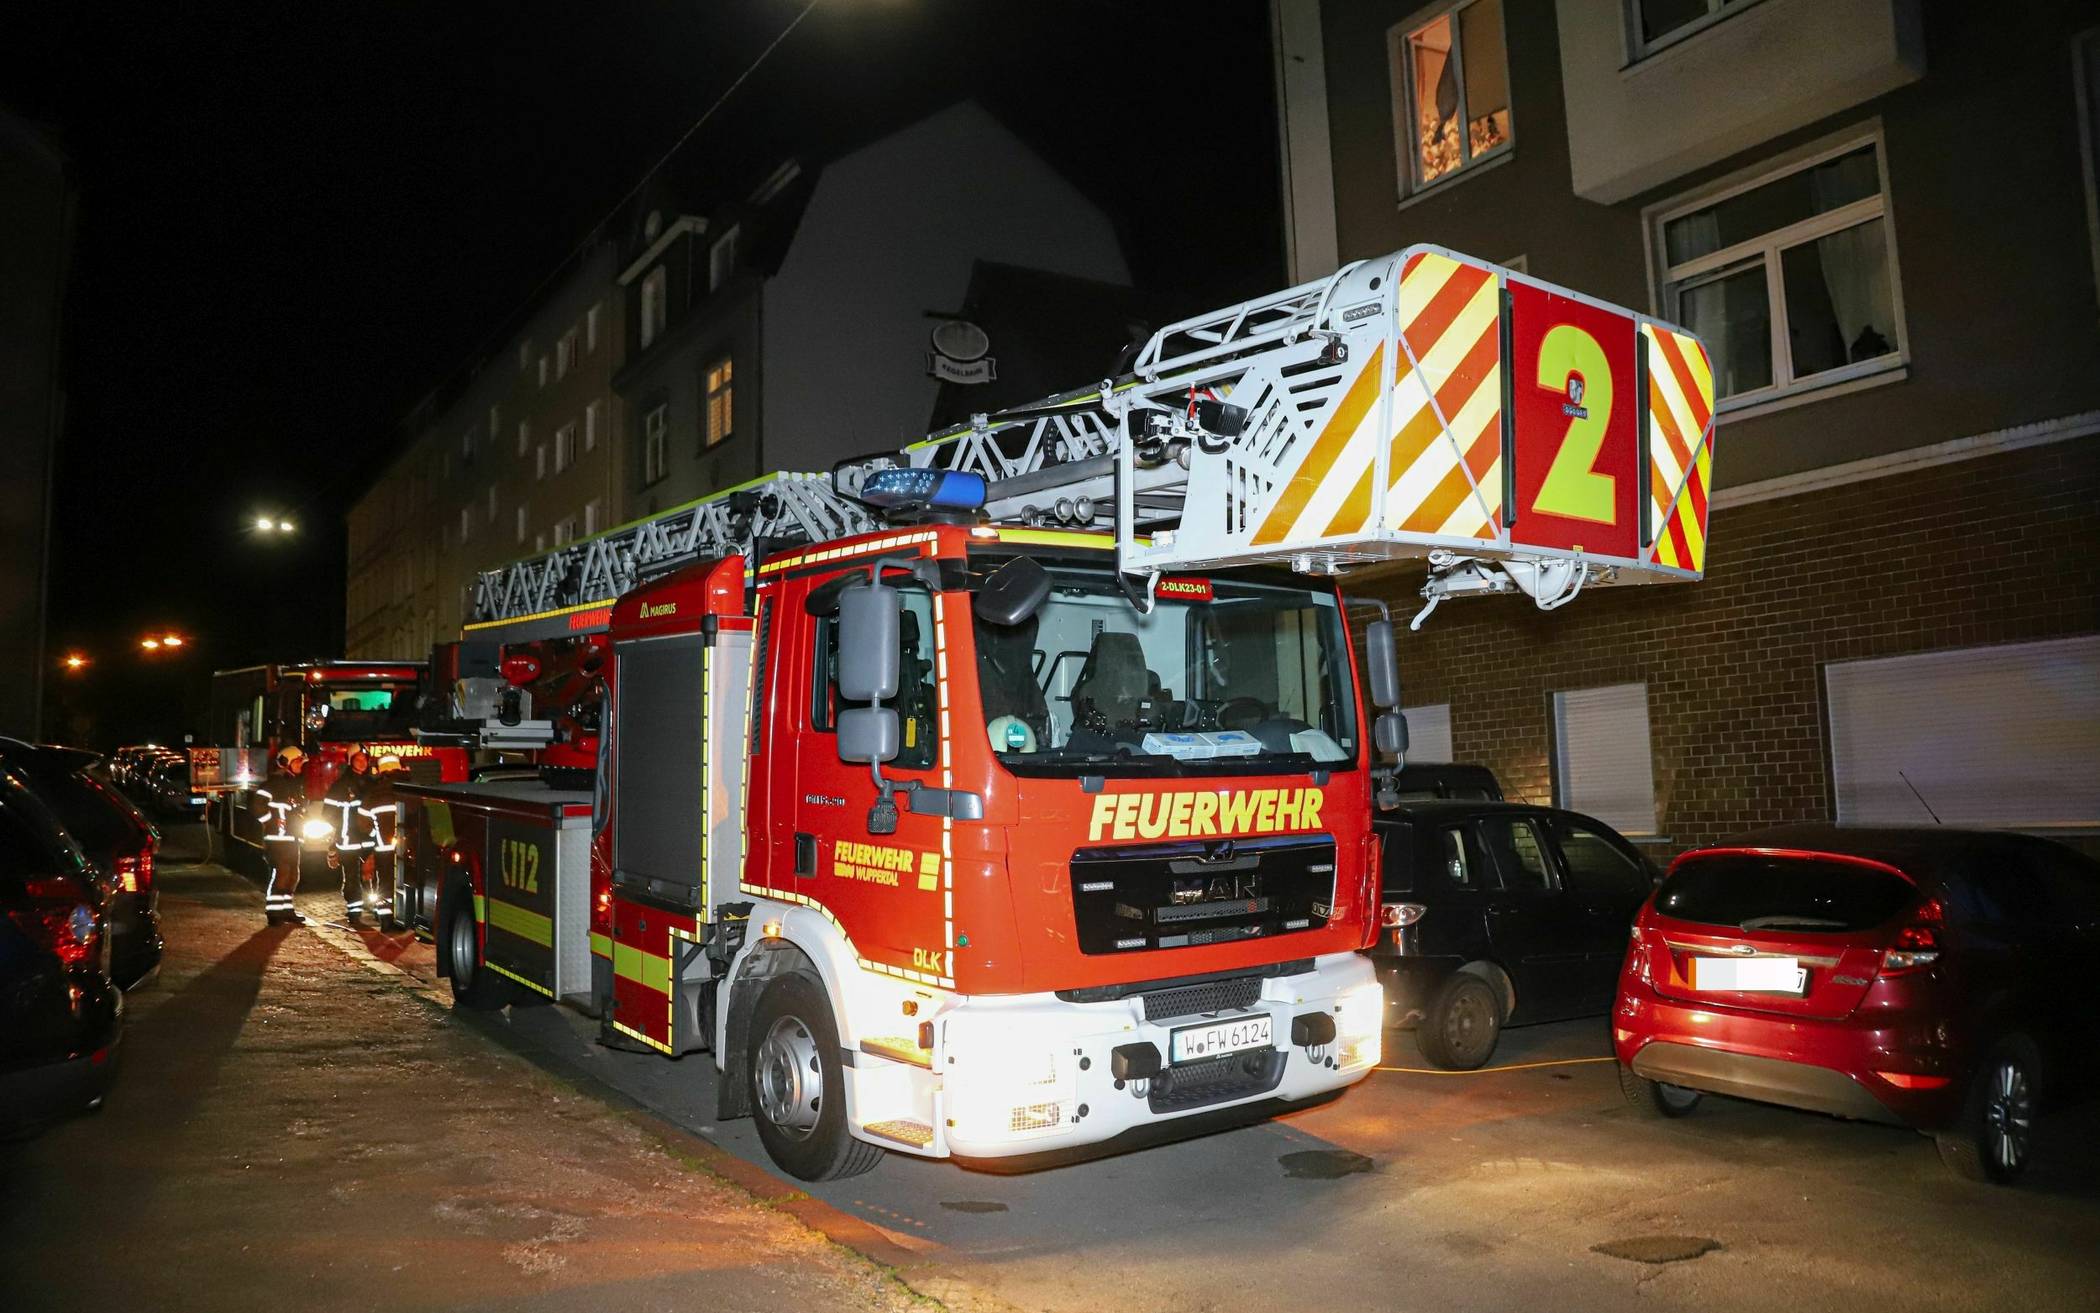 Feuerwehr-Einsatz wegen Brand in Kinderbett